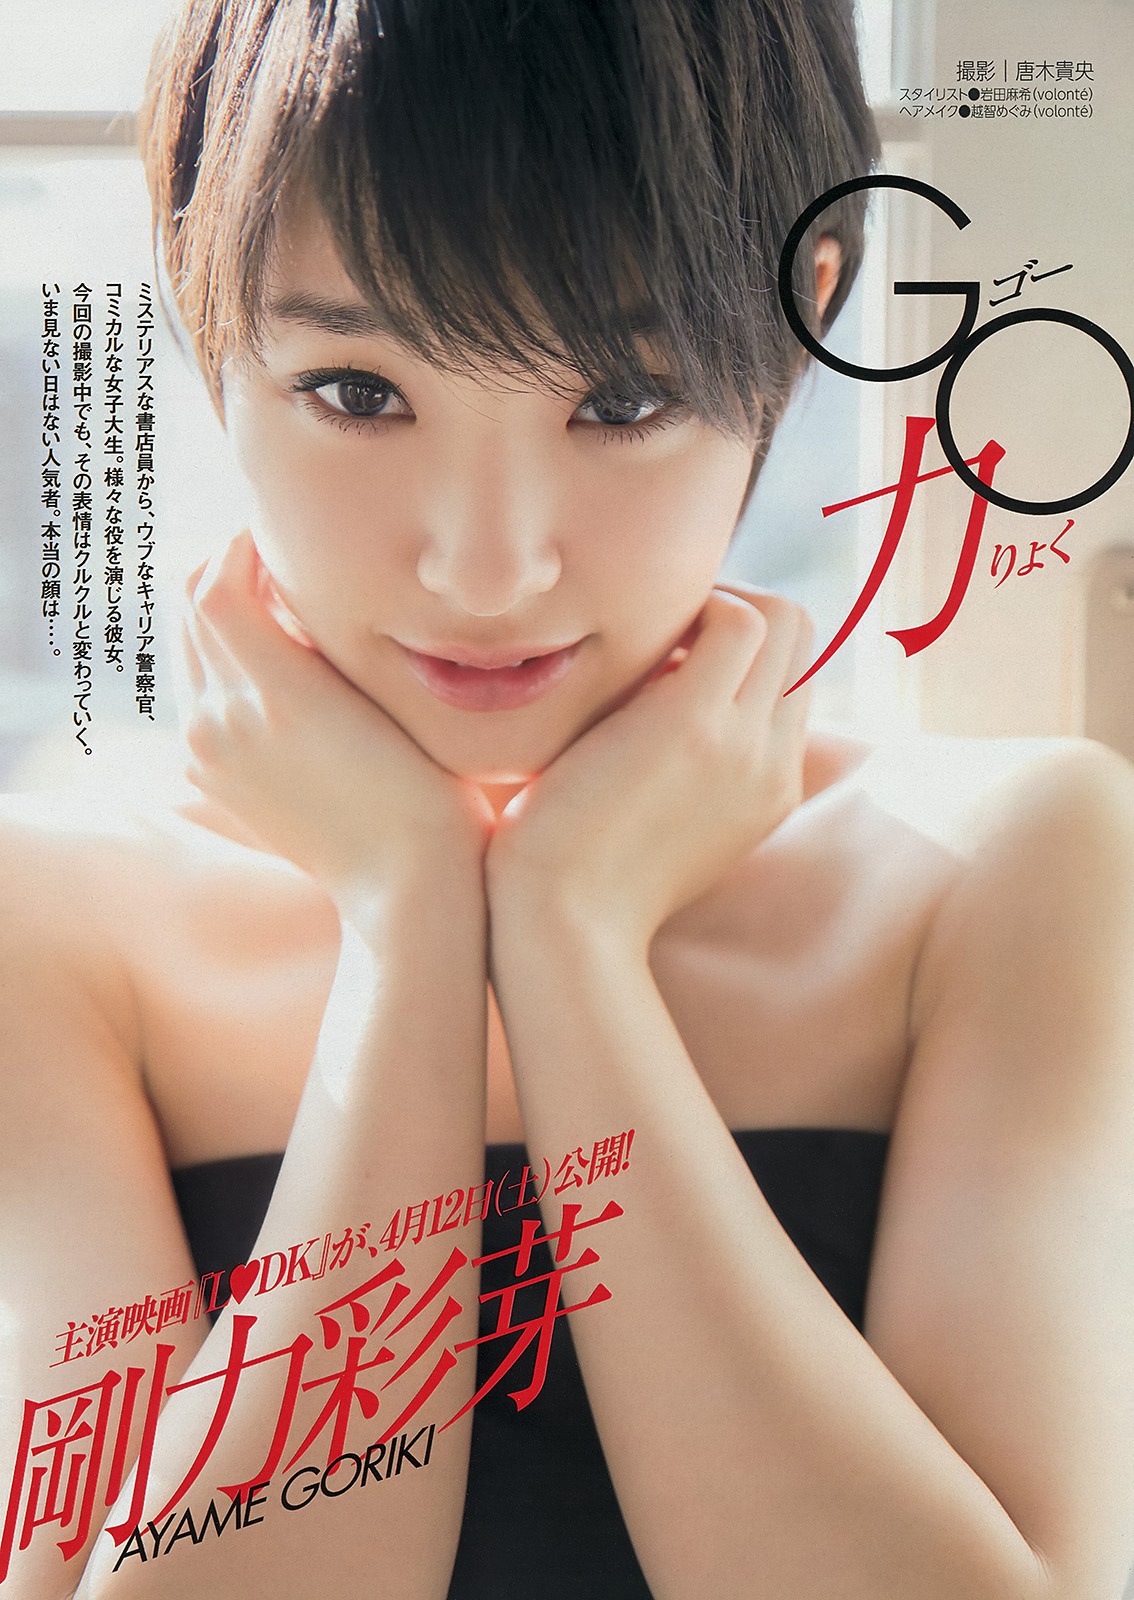 Young magazine. Аямэ Горики актрисы Японии. Хикари Сиина. Аямэ Горики поцелуй. Аяме японская актриса.